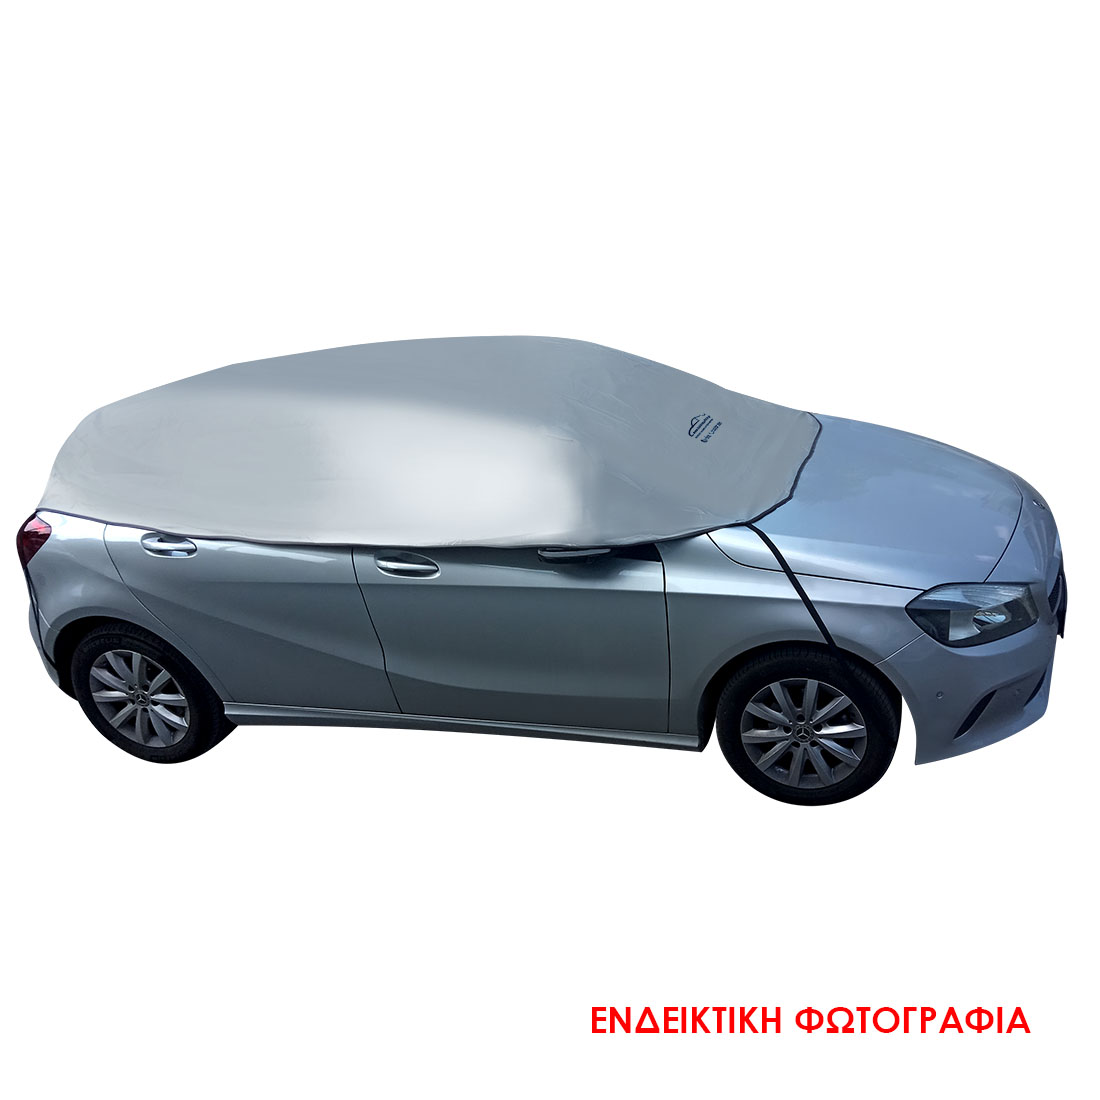 Ημικουκούλα αυτοκινήτου Sedan αδιάβροχη (SD2) (2.85x1.40x0.55cm)